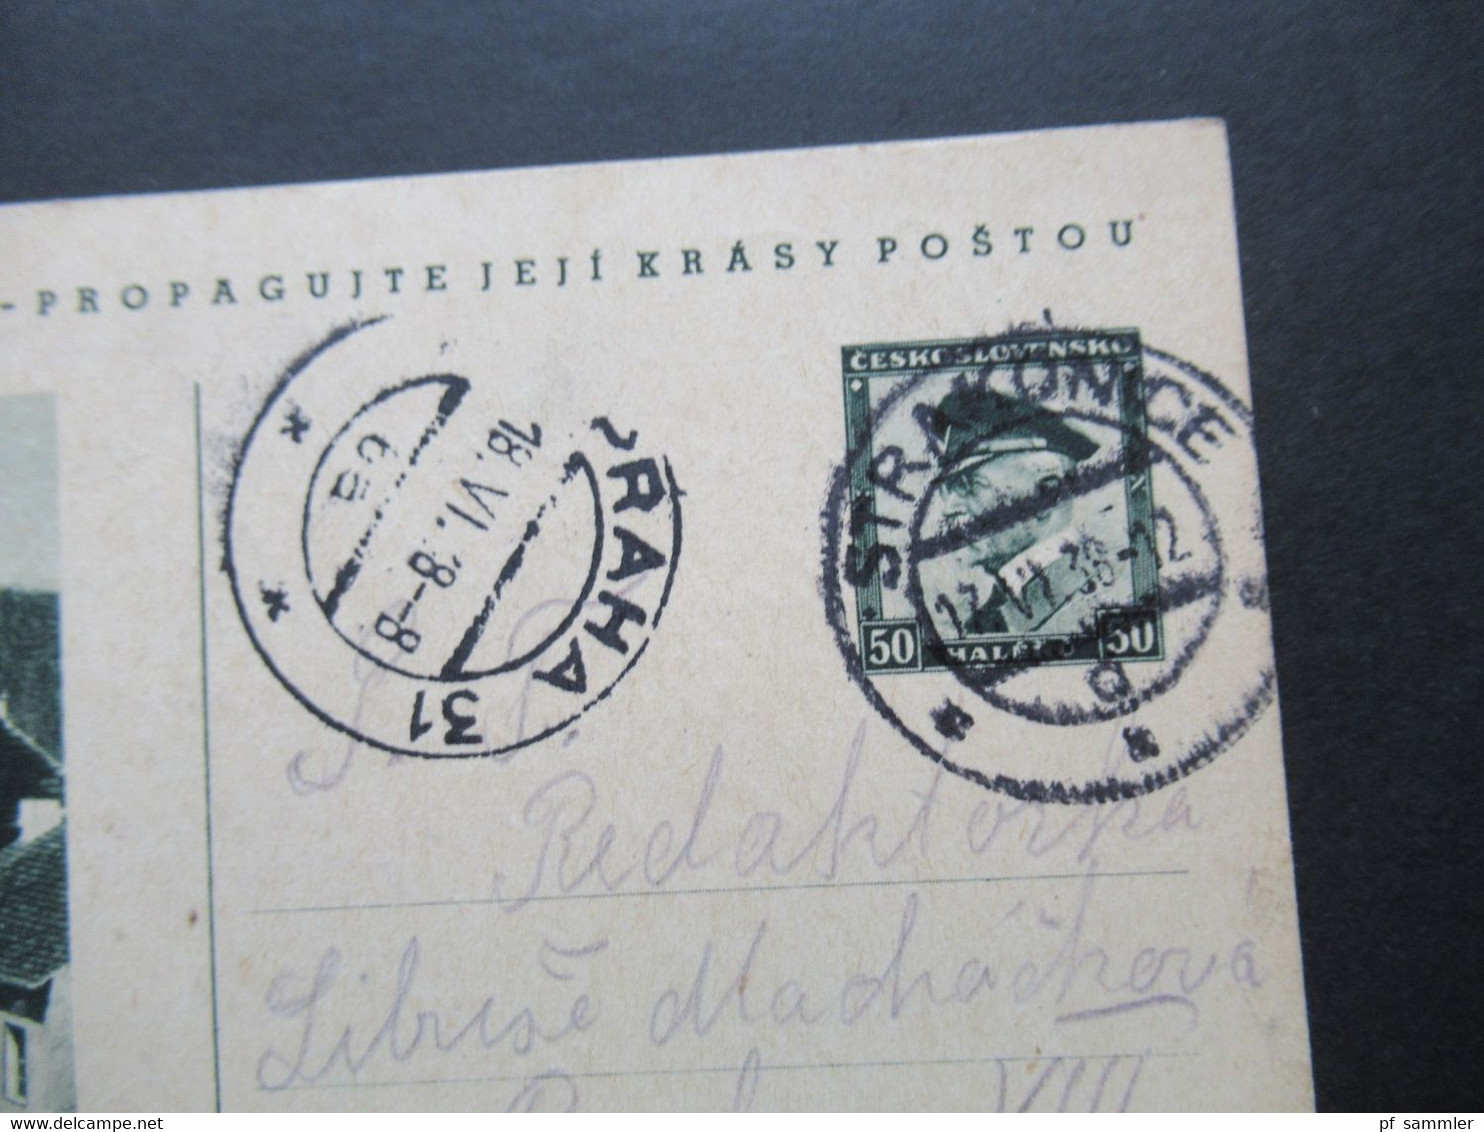 CSSR Tschechoslowakei 1930er Jahre Bildpostkarten 11 Stück teilweise Bedarf aber auch Sonderstempel